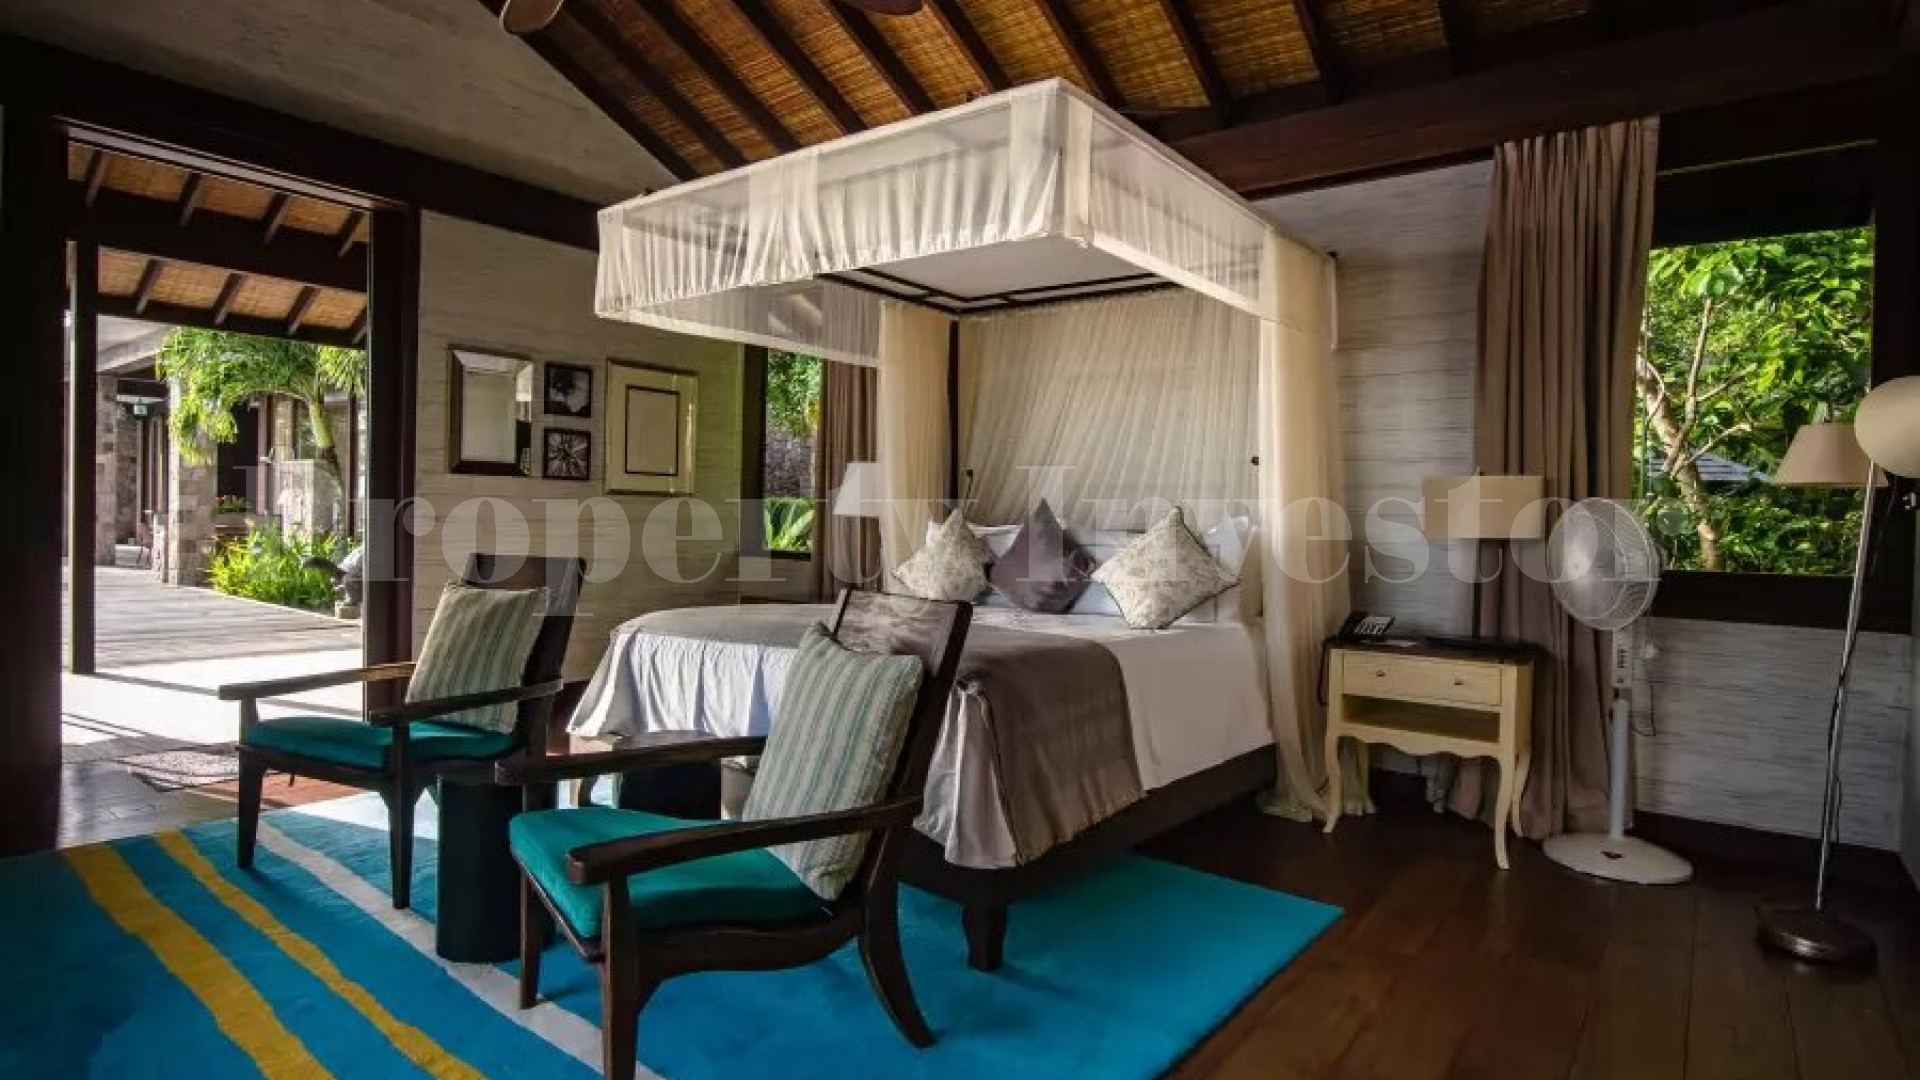 Изумительная роскошная вилла на 7 спален на возвышенности с потрясающим панорамным видом на океан на о.Маэ, Сейшелы